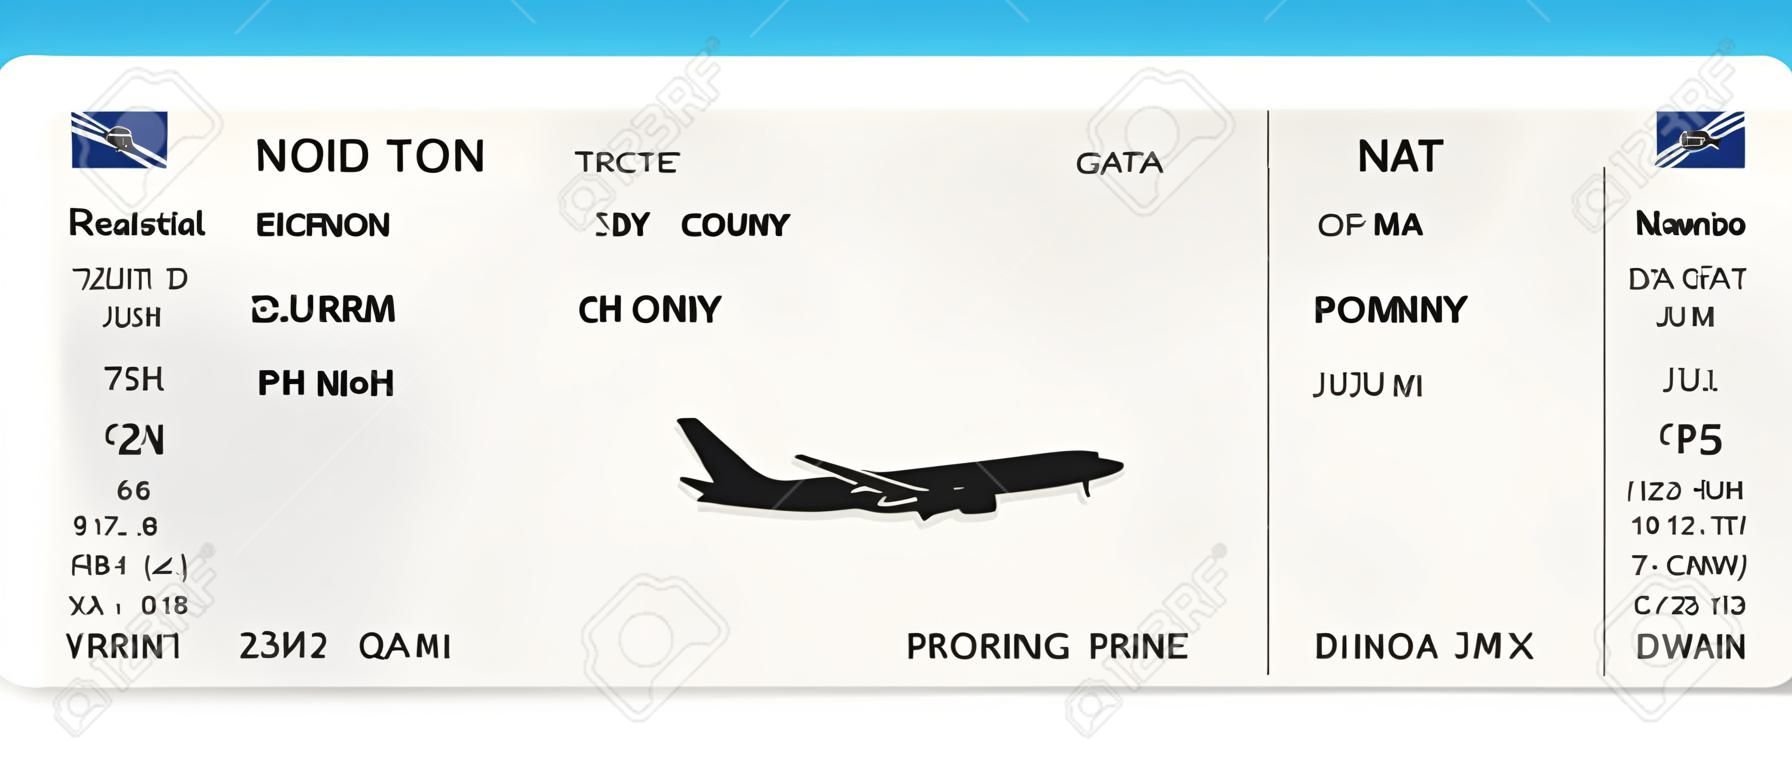 Niebieski realistyczny projekt biletu lotniczego lub karty pokładowej z nierzeczywistym czasem lotu i nazwiskiem pasażera. Ilustracja wektorowa wzoru karty pokładowej